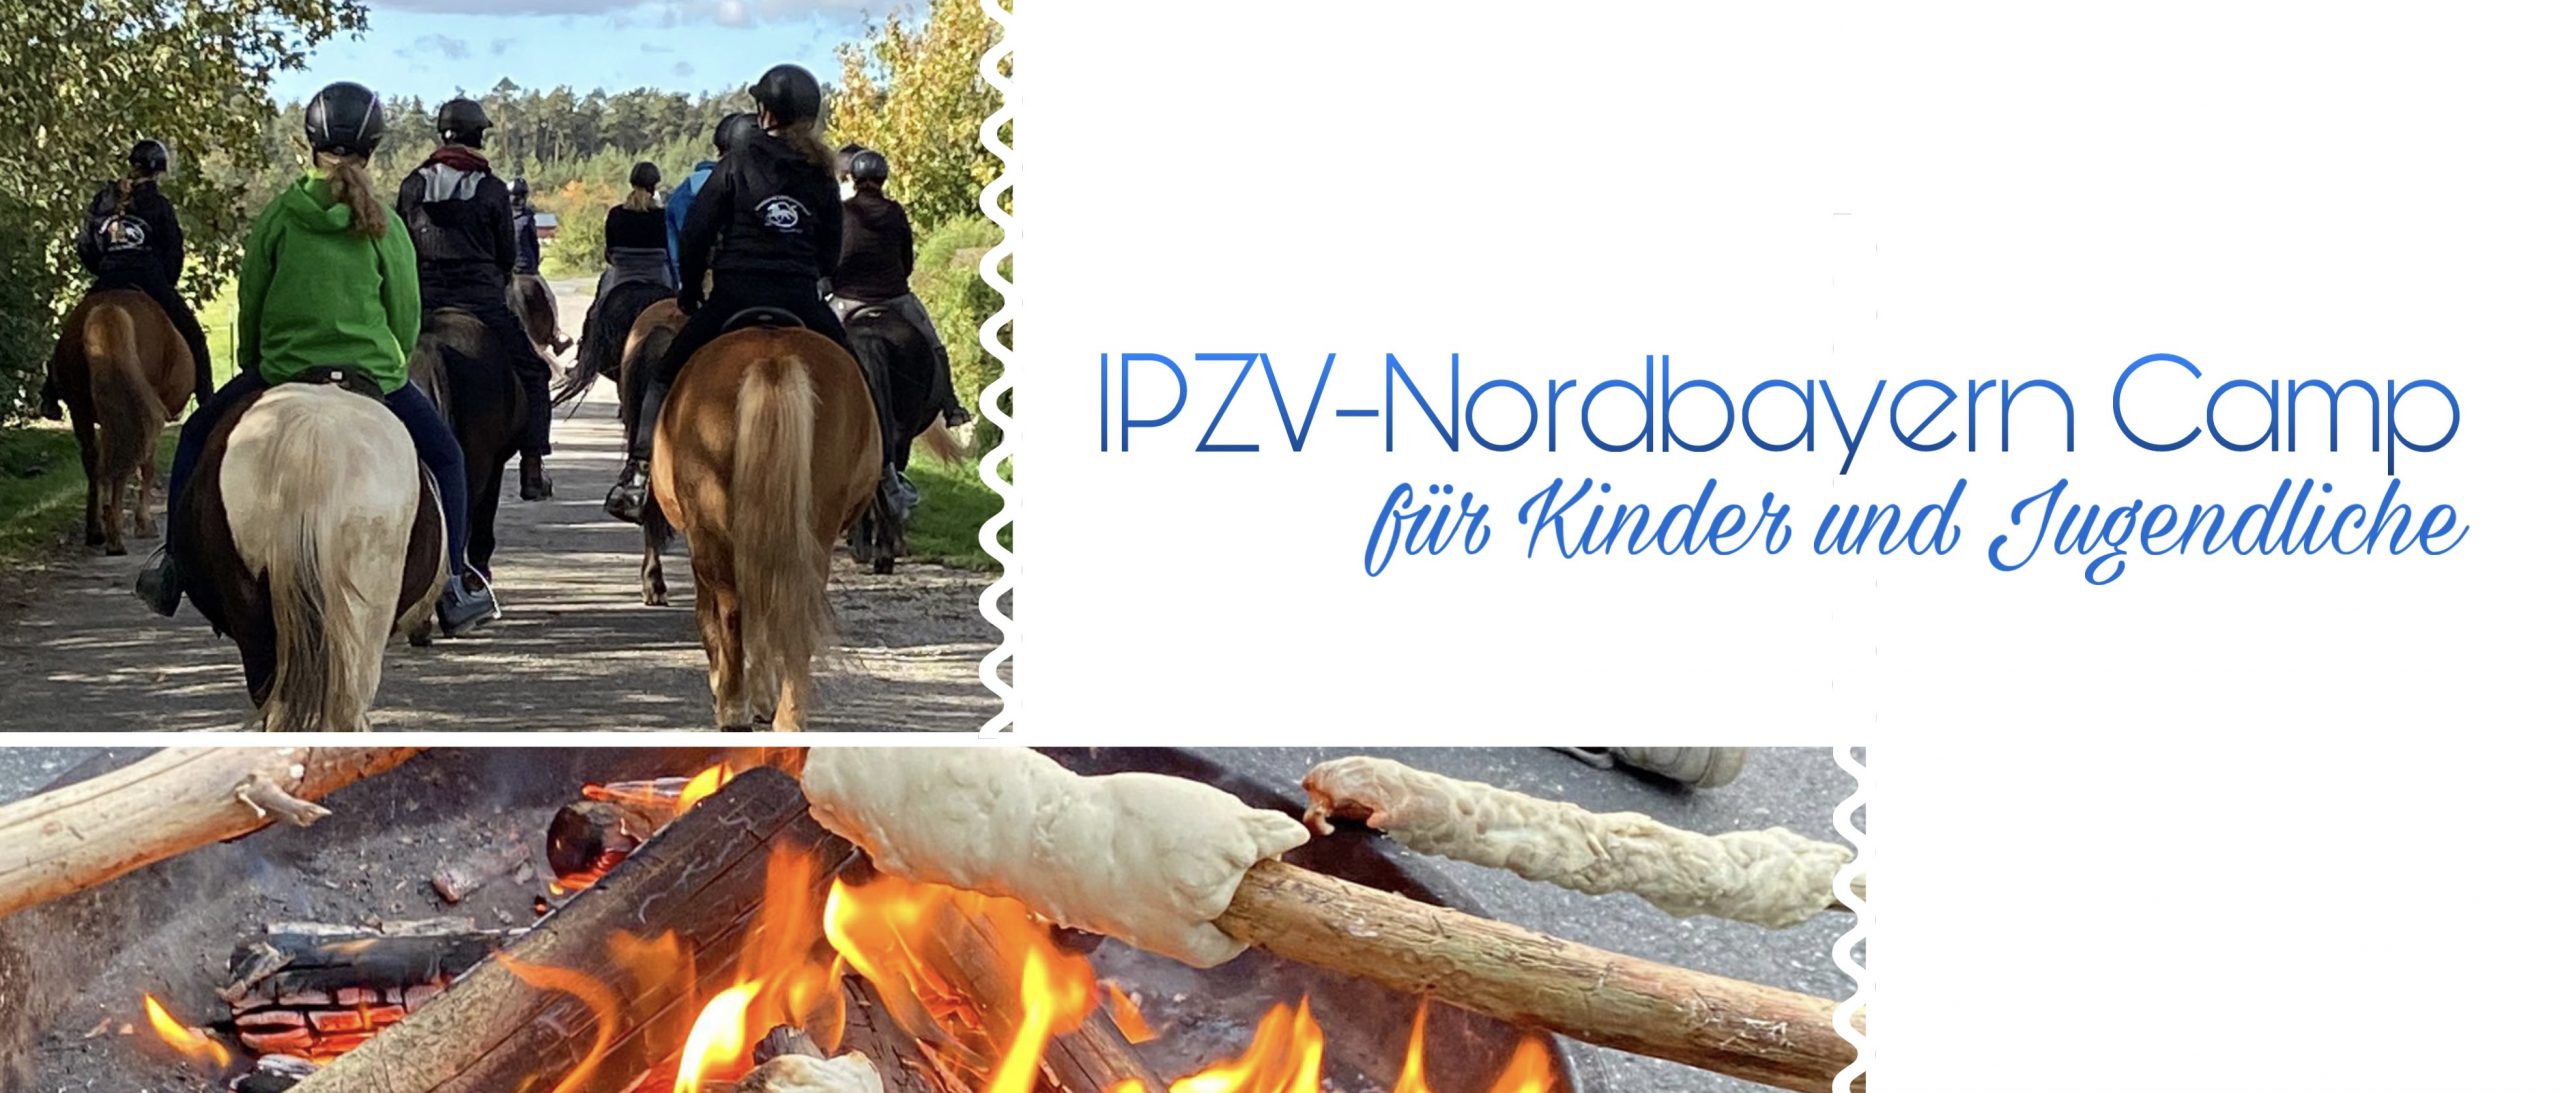 IPZV-Nordbayern Camp für Kinder und Jugendliche